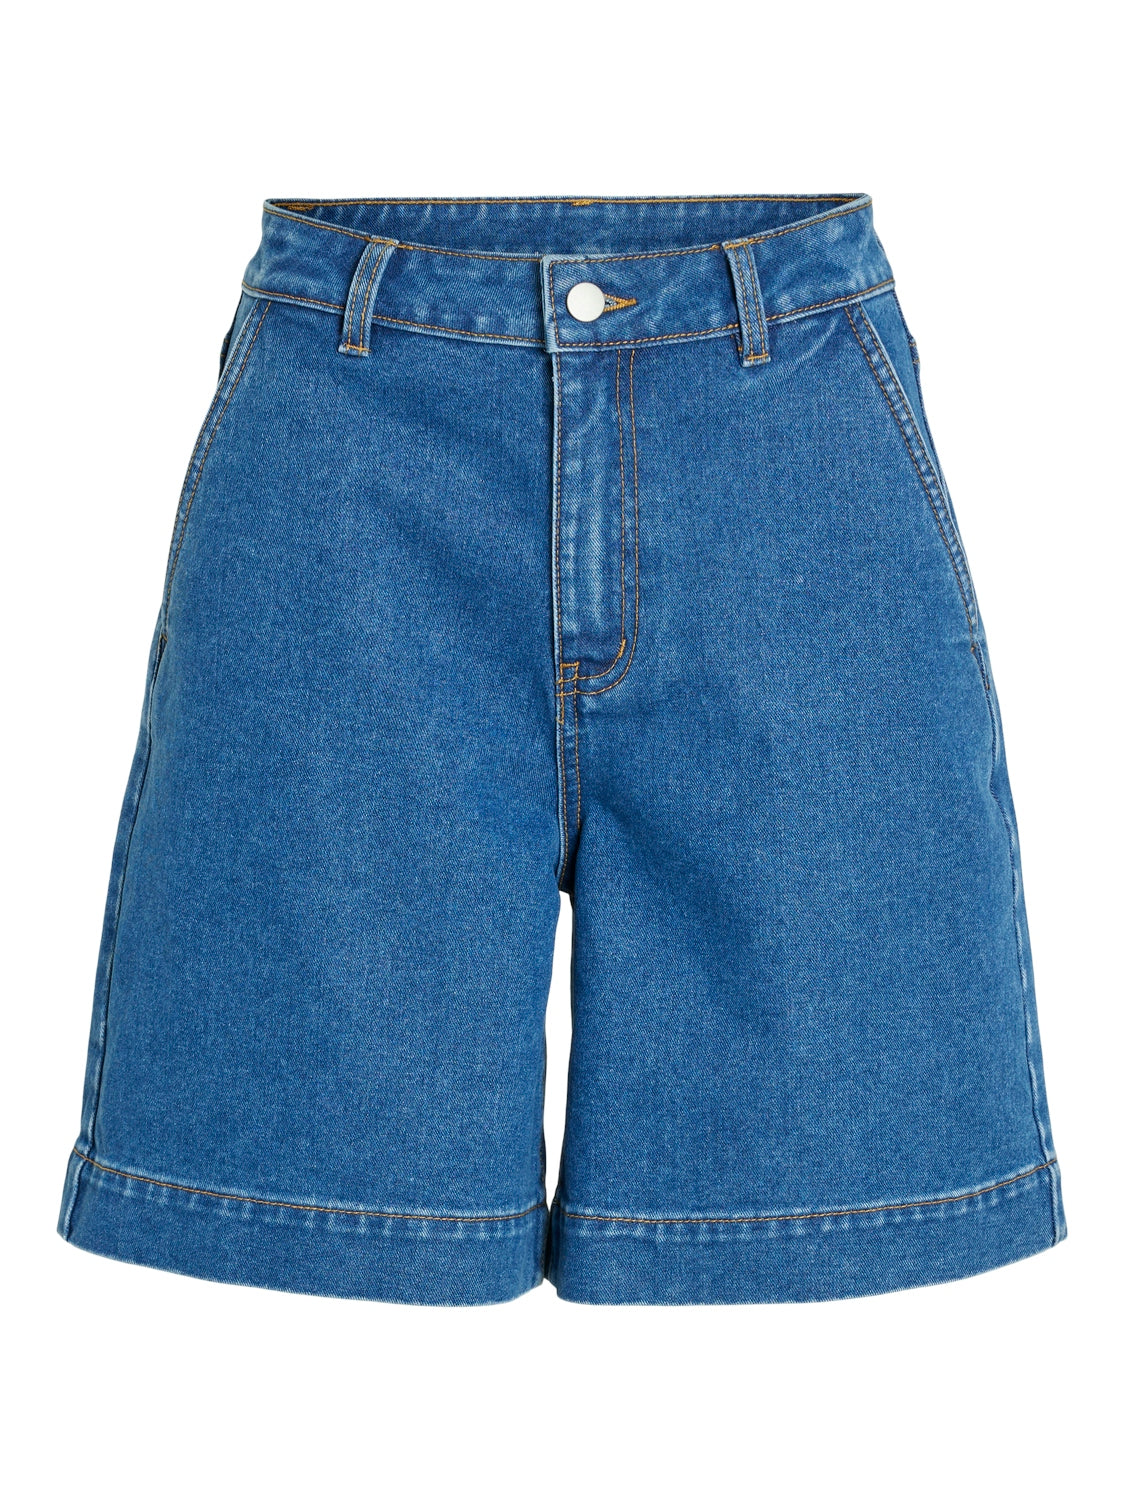 Kenya Demin Shorts (Medium Blue)